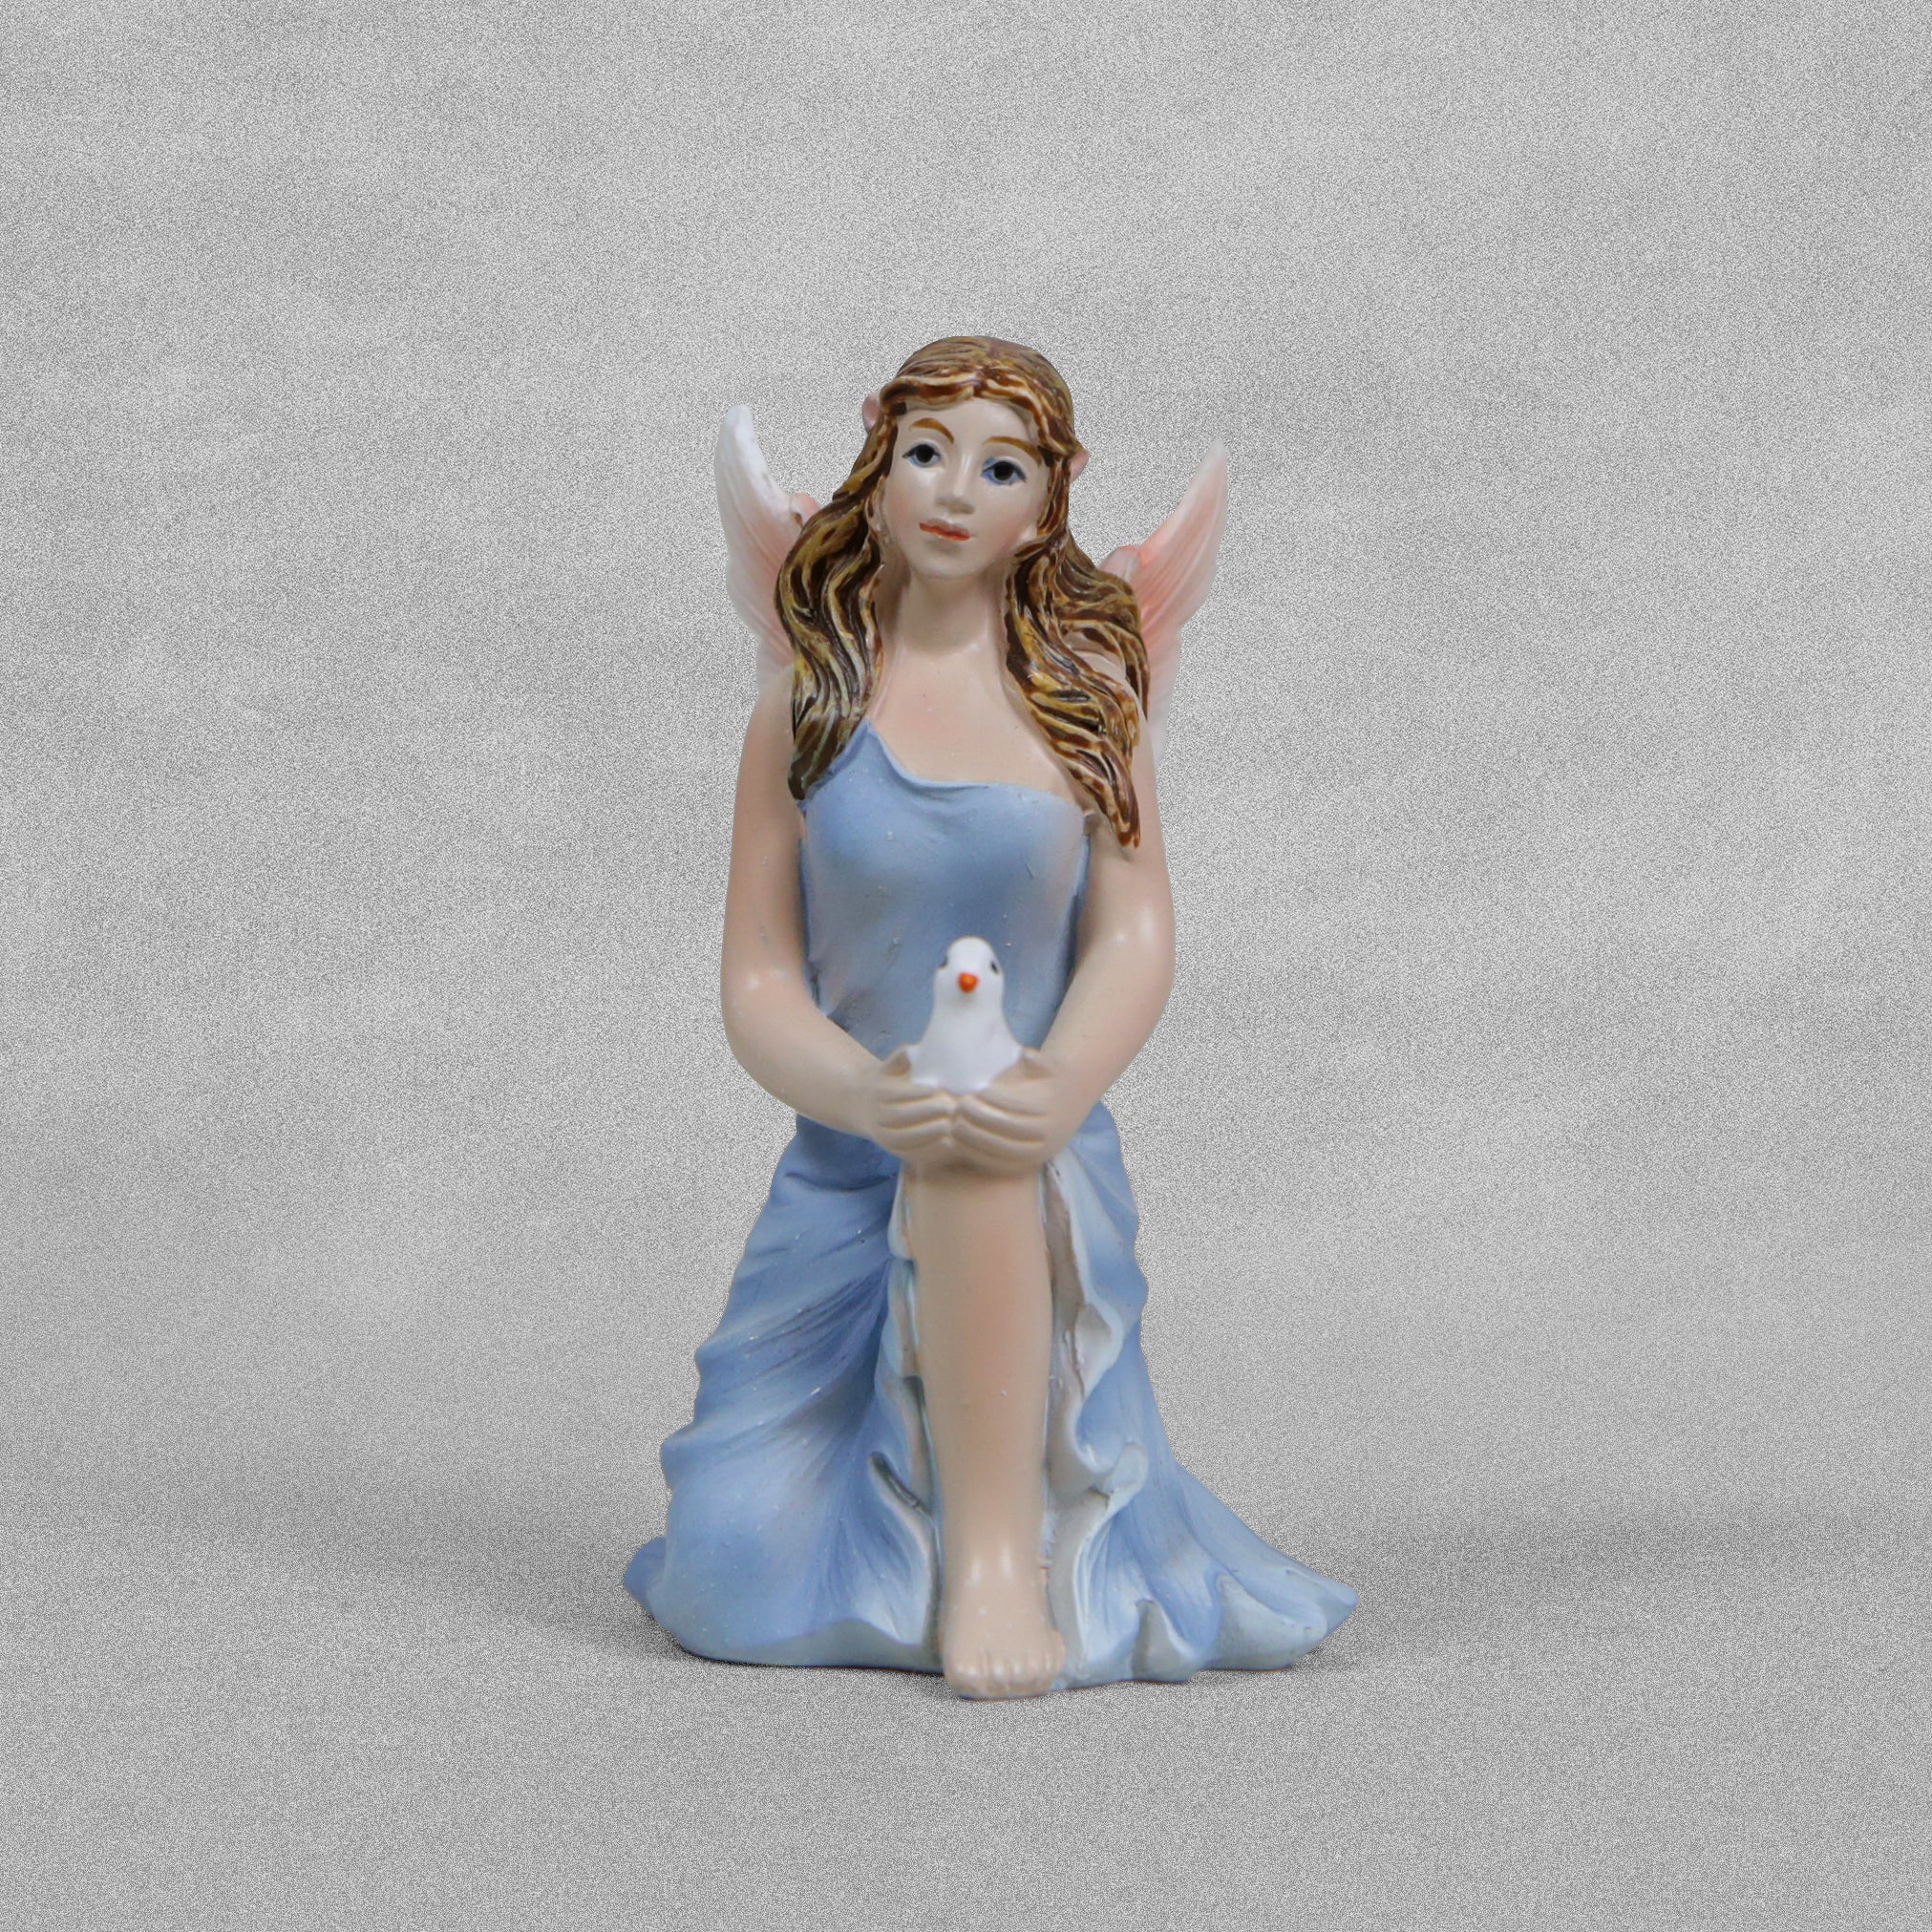 Vivid Arts Miniature World - Kneeling Fairy